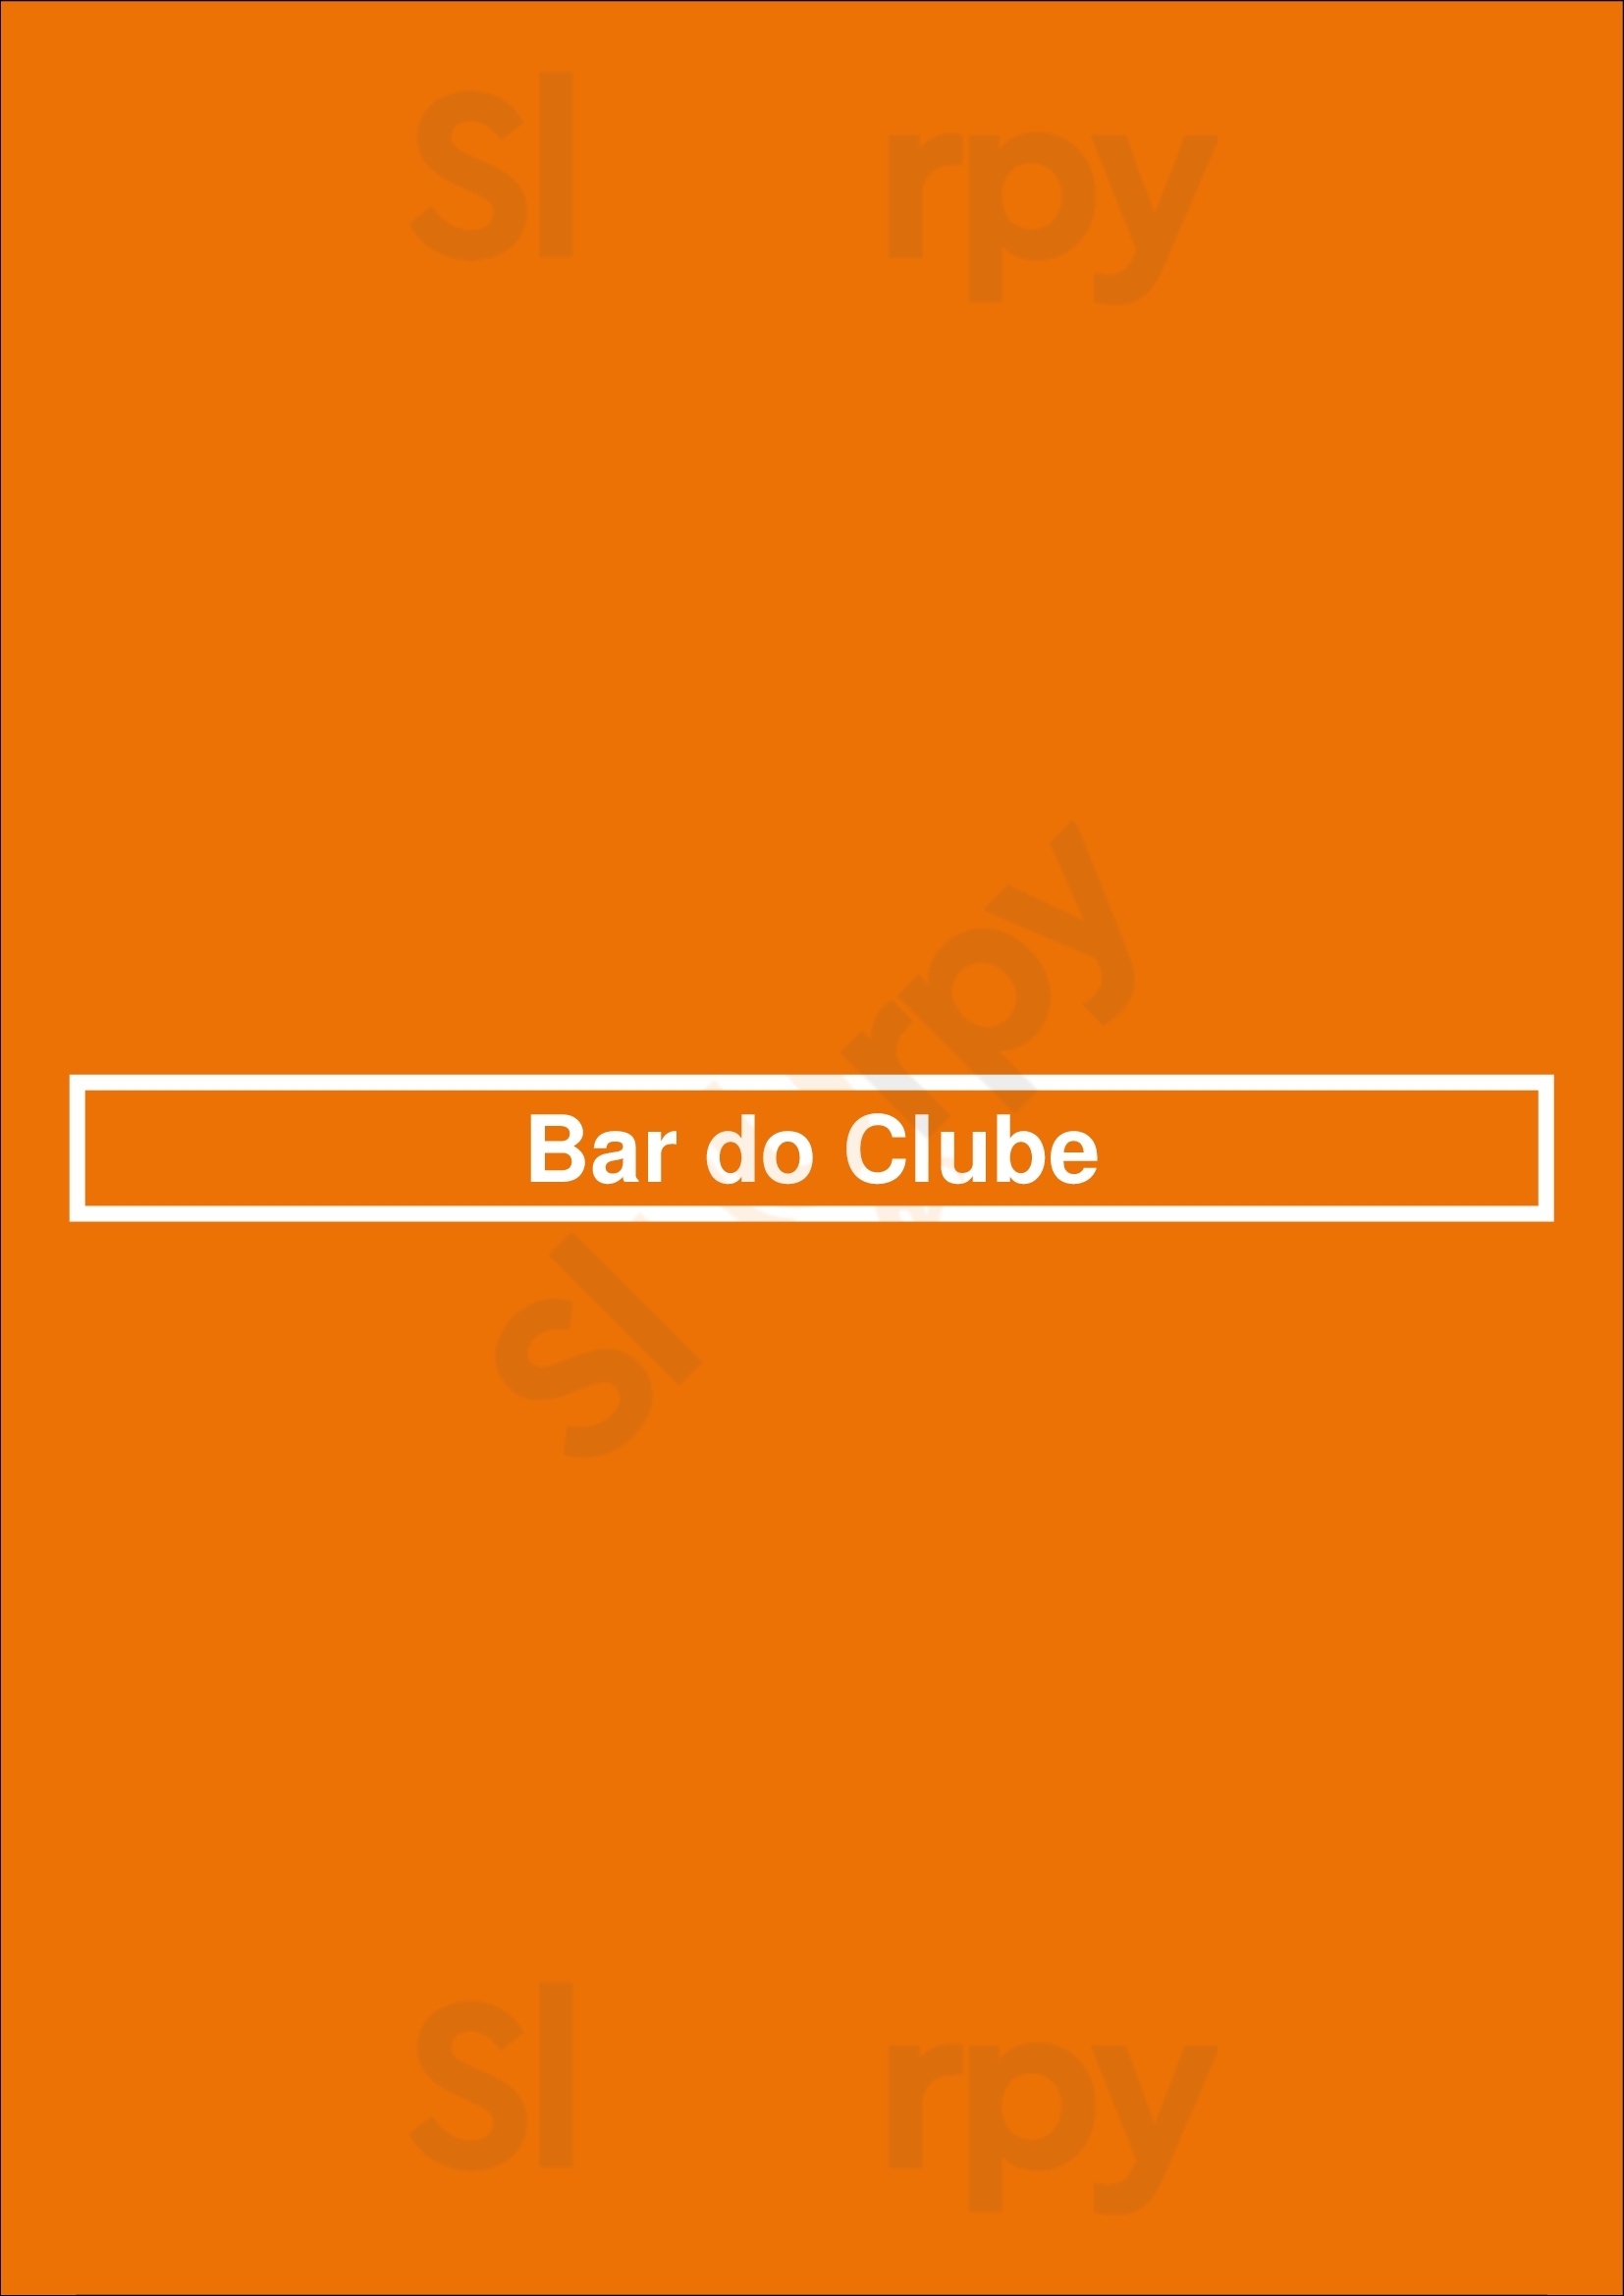 Bar Do Clube Póvoa de Varzim Menu - 1